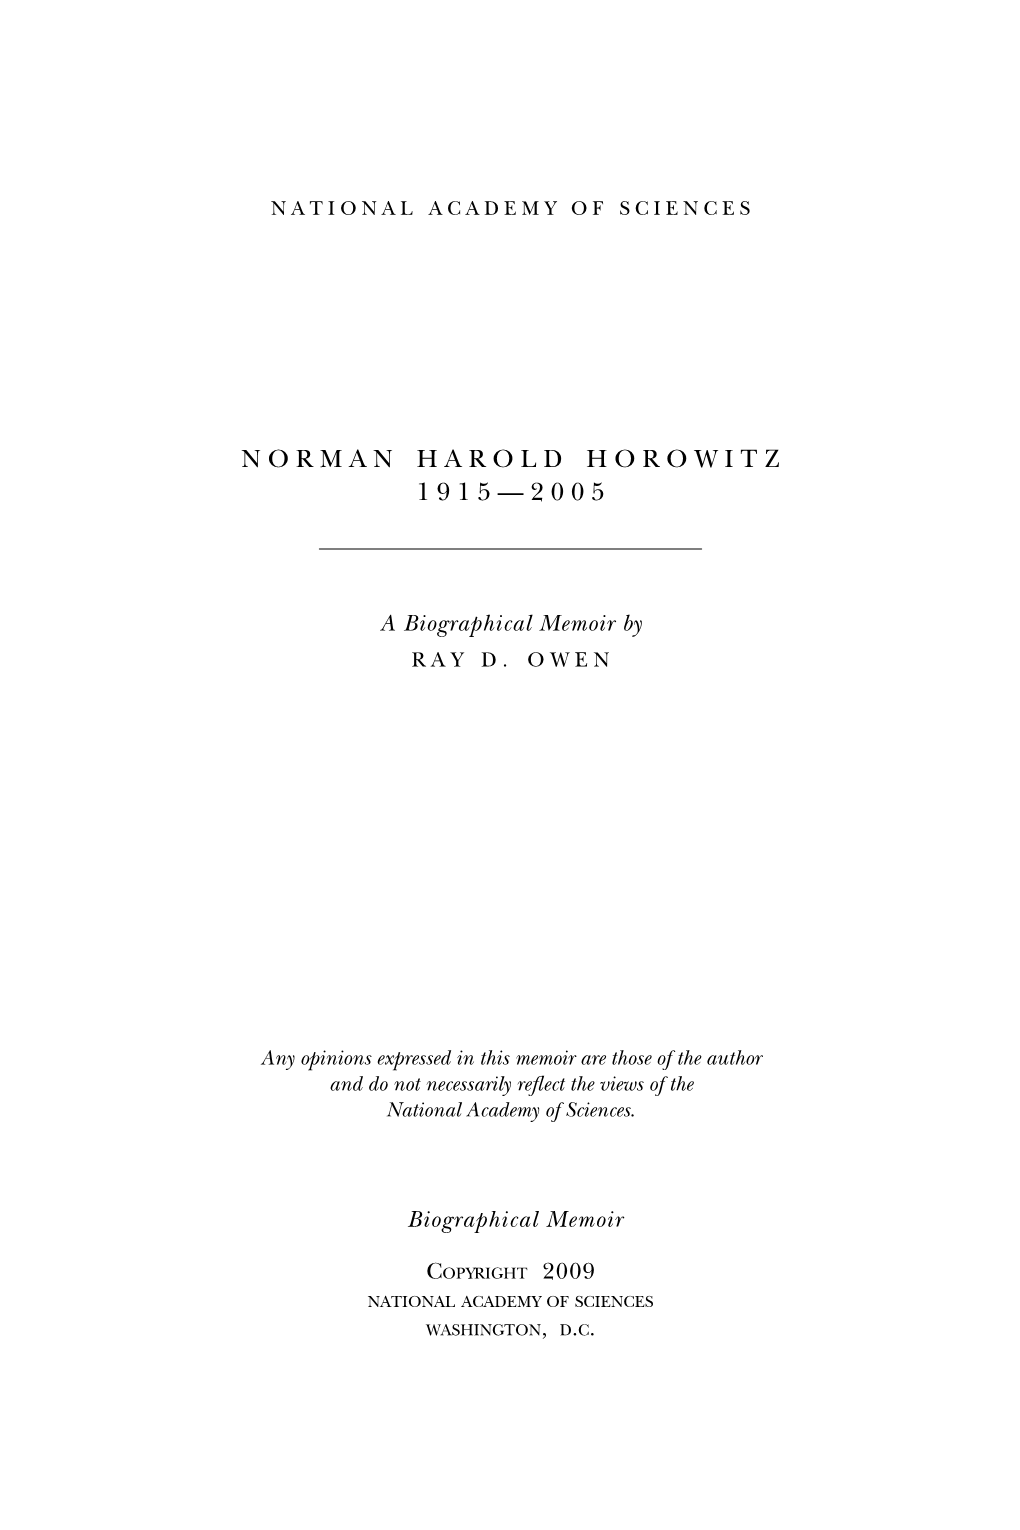 Norman Harold Horowitz 1915—2005